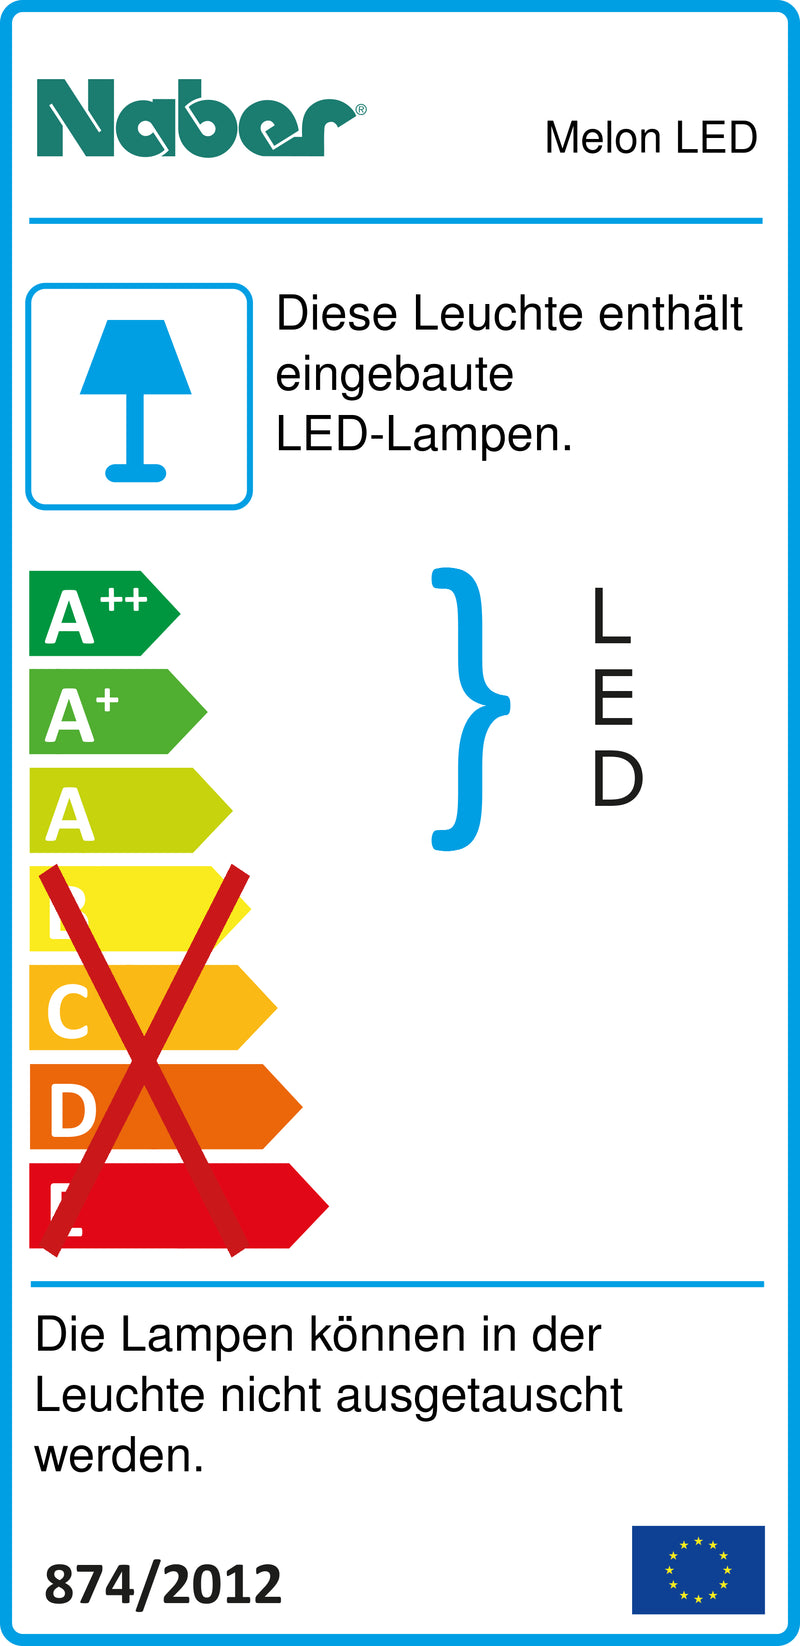 E-Label zu Zeichnung zu Melon LED als Variante 7 LED Strahler, L 800 mm, 10,5 W, edelstahlfarbig von Naber GmbH in der Kategorie Lichttechnik in Österreich auf conceptshop.at